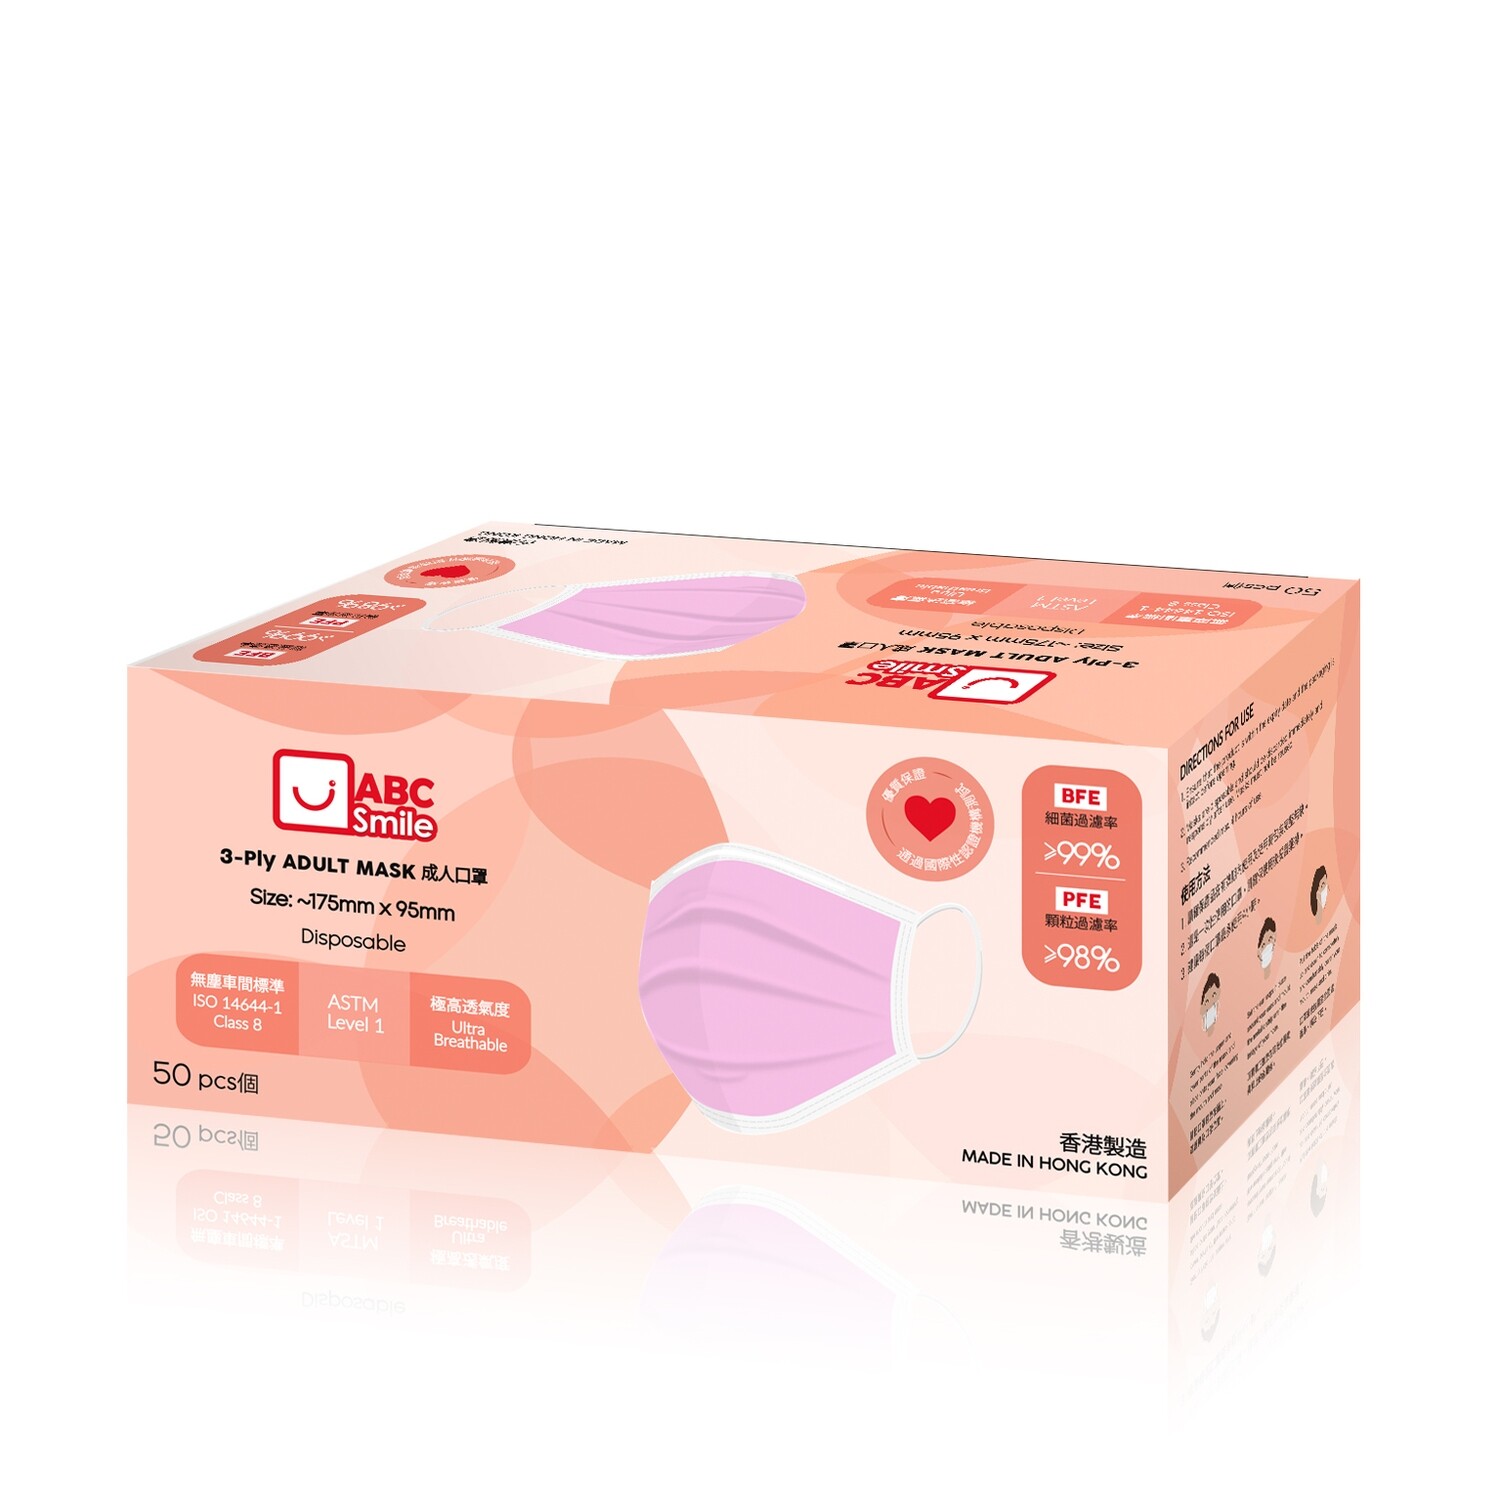 成人口罩 非獨立包裝 [粉紅色] 50個/盒 (每箱20盒)